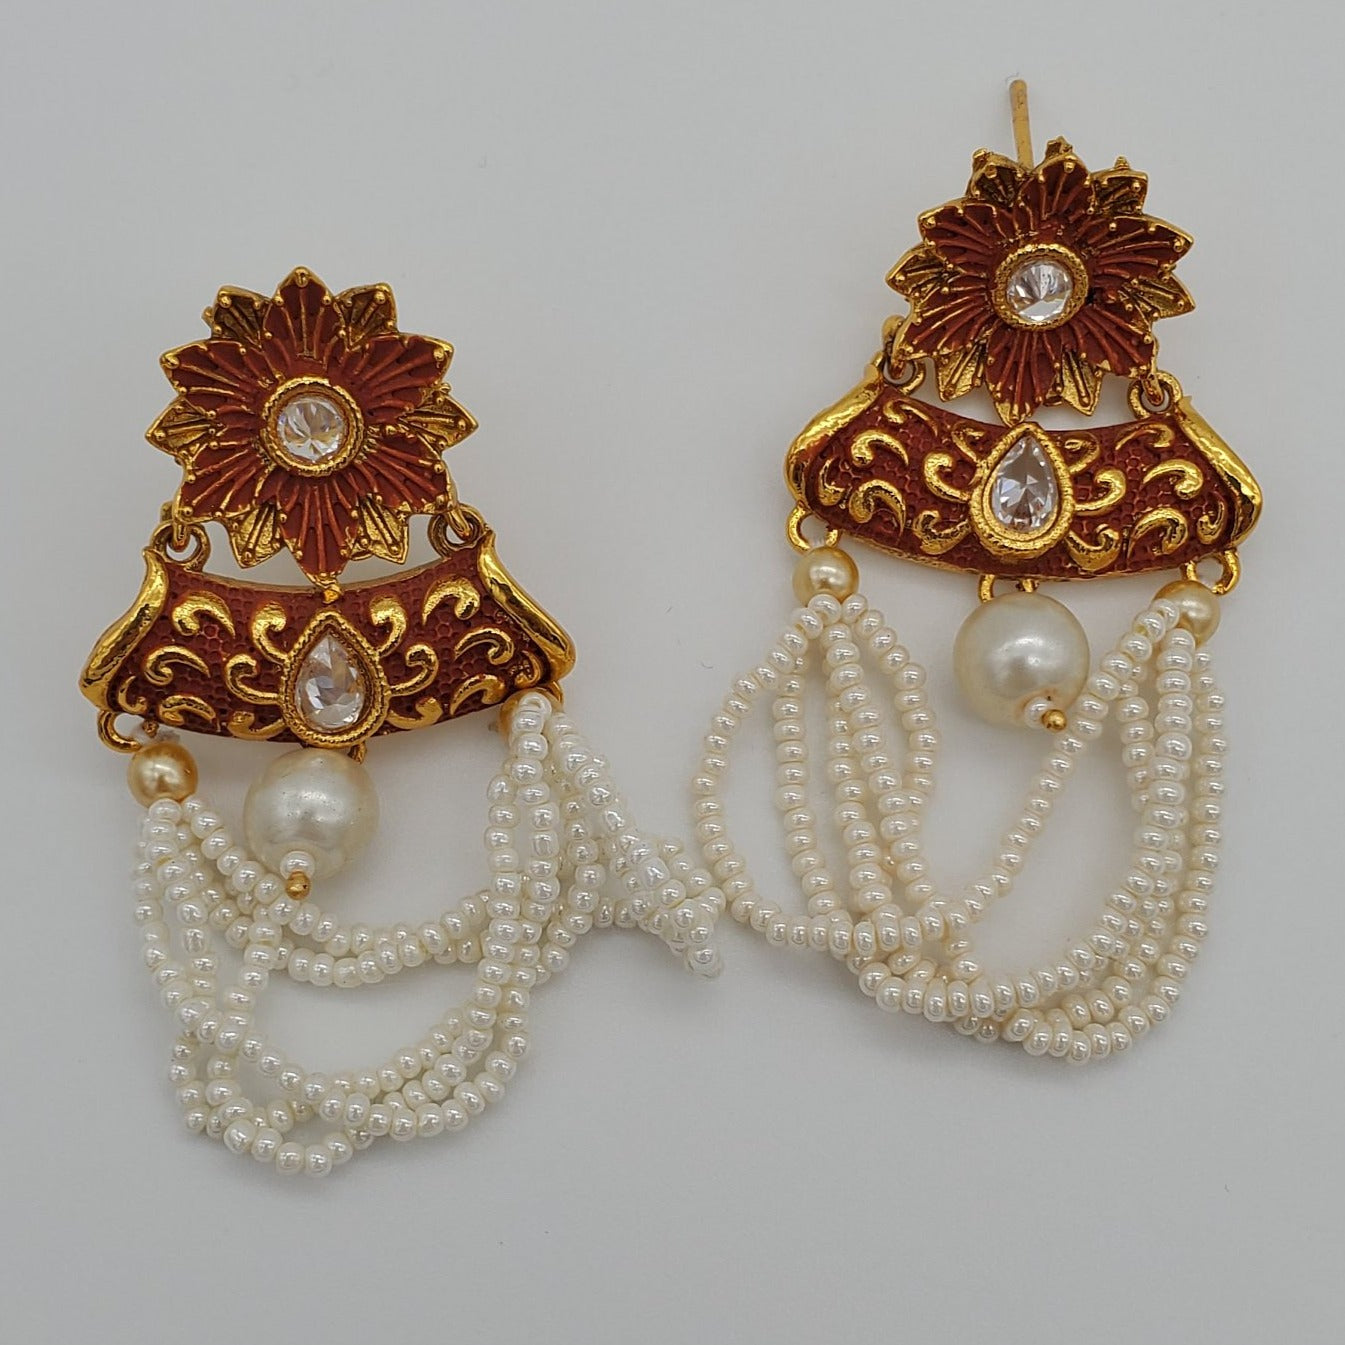 Indian earrings/gold plated earring/artificial earrings/ pearl drop earring/Bollywood style fashion jewelry/meenakari earring/kundan earring